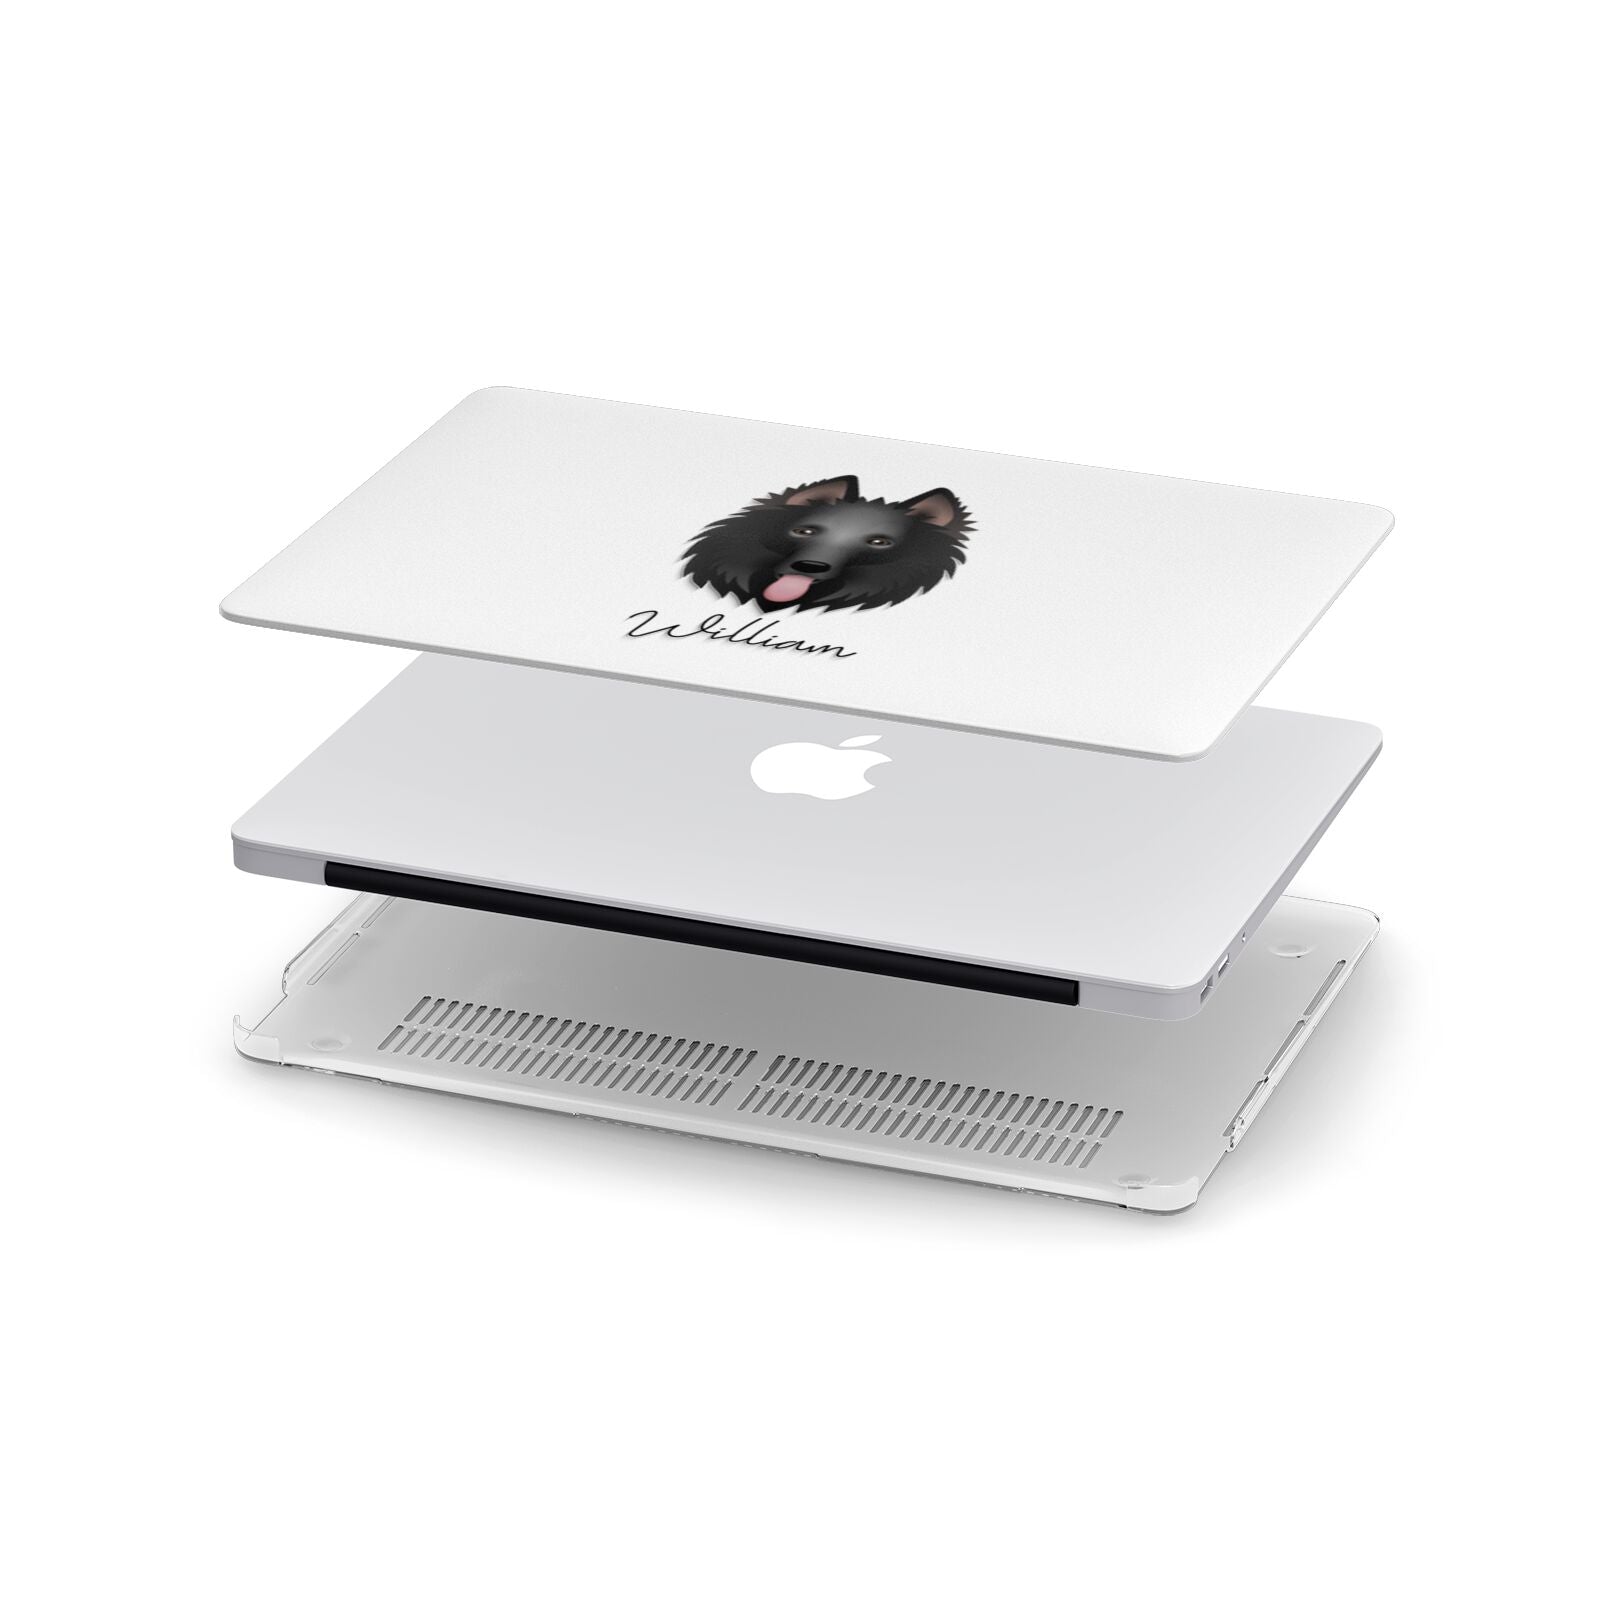 Belgian Groenendael Personalised Apple MacBook Case in Detail